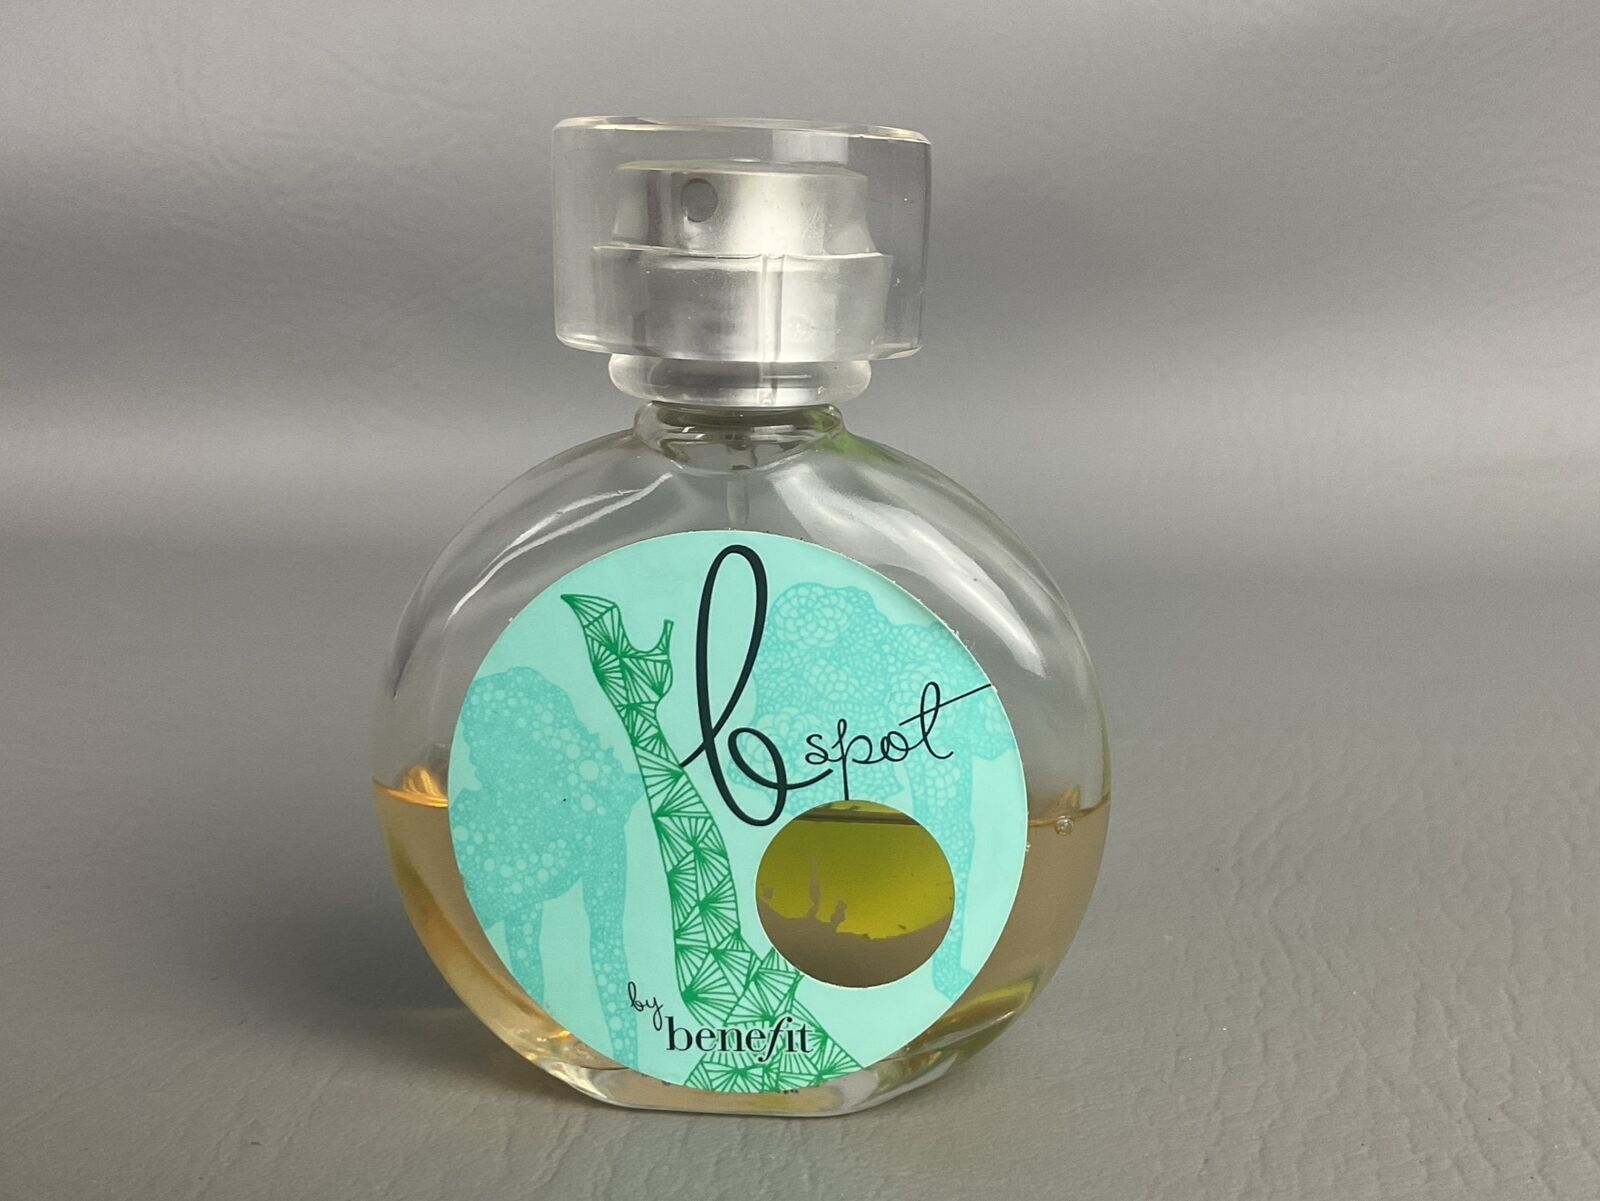 *RARE* Vintage B SPOT by Benefit Eau de Toilette 2008 Perfume DISCONTINUED 40%